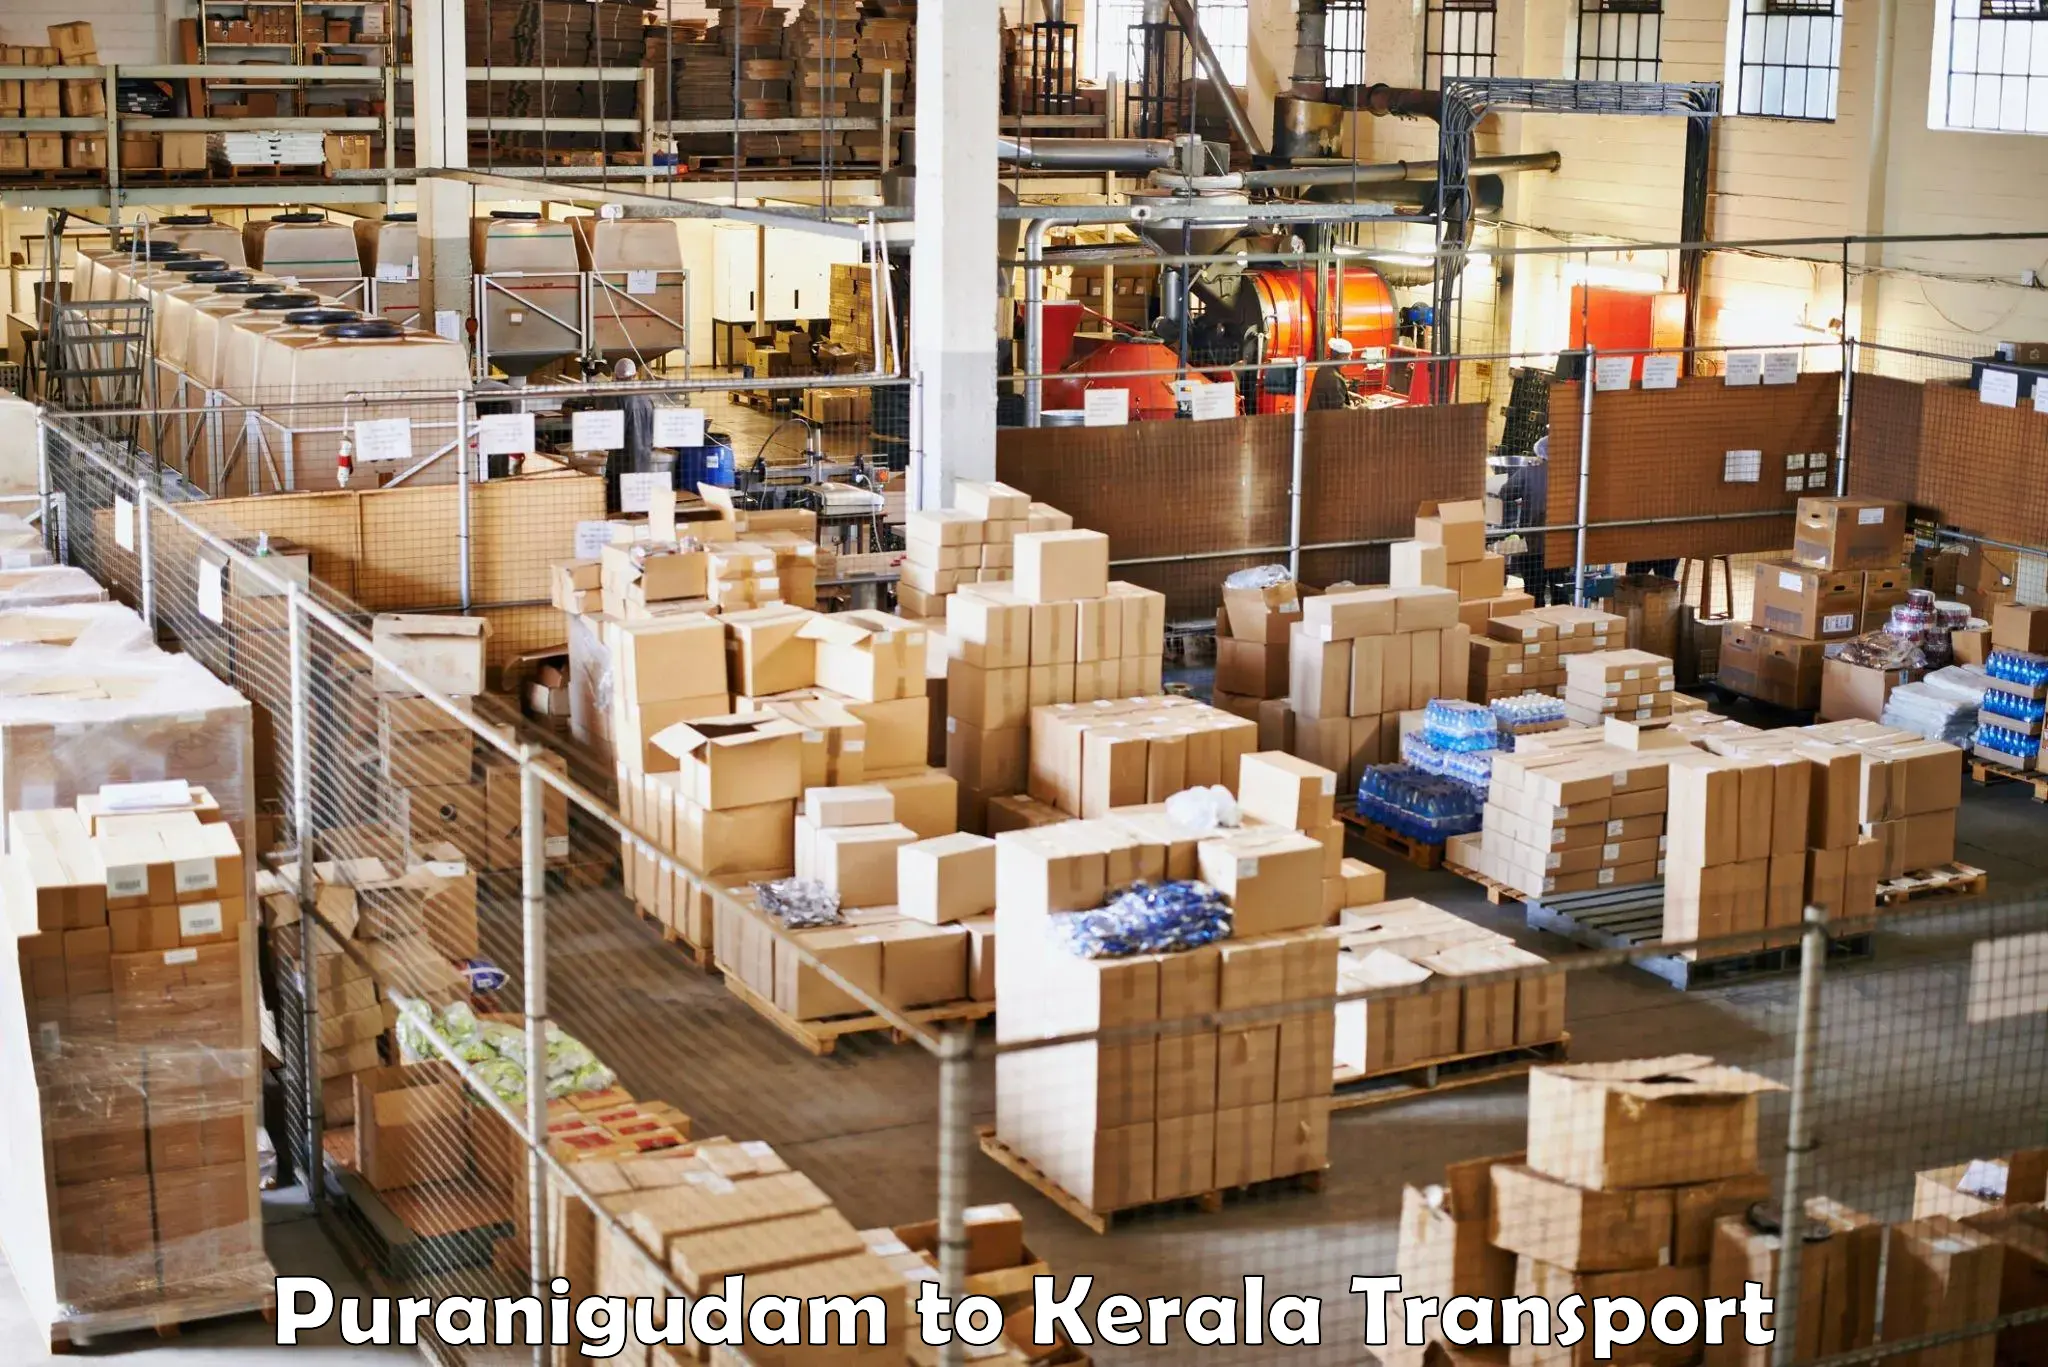 Furniture transport service Puranigudam to Ponekkara